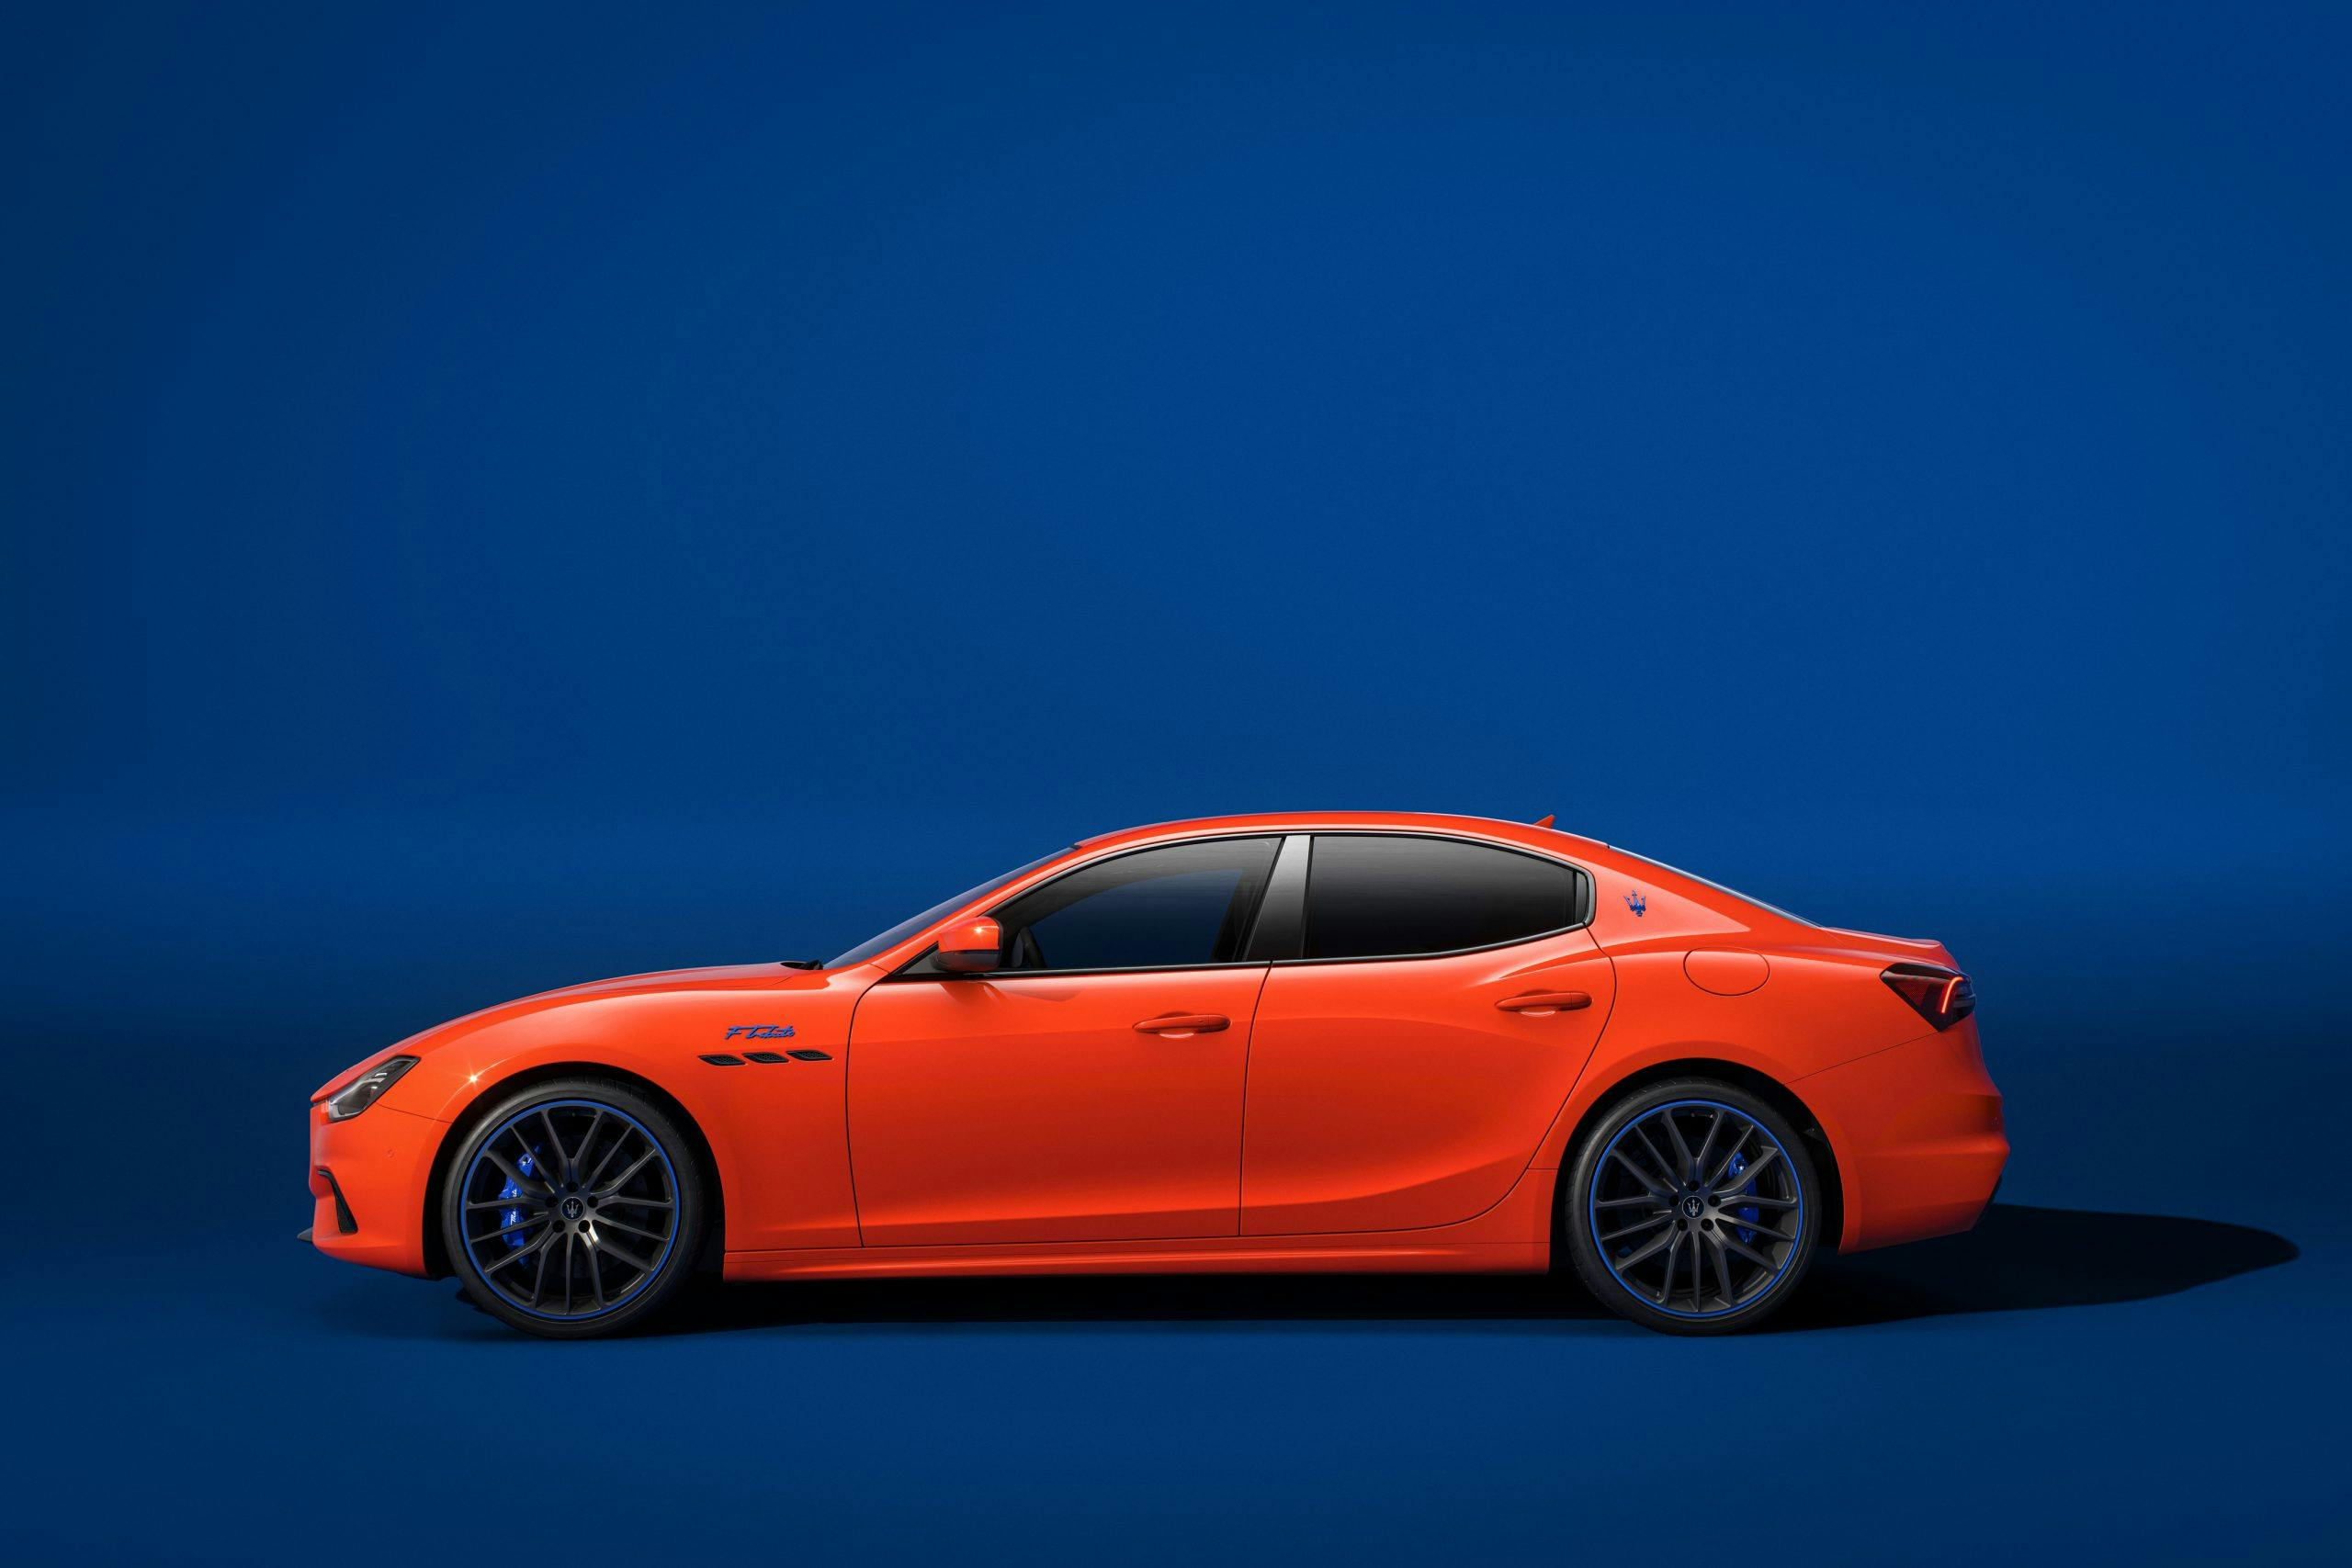 Maserati F Tributo Special Edition Ghibli exterior side profile orange